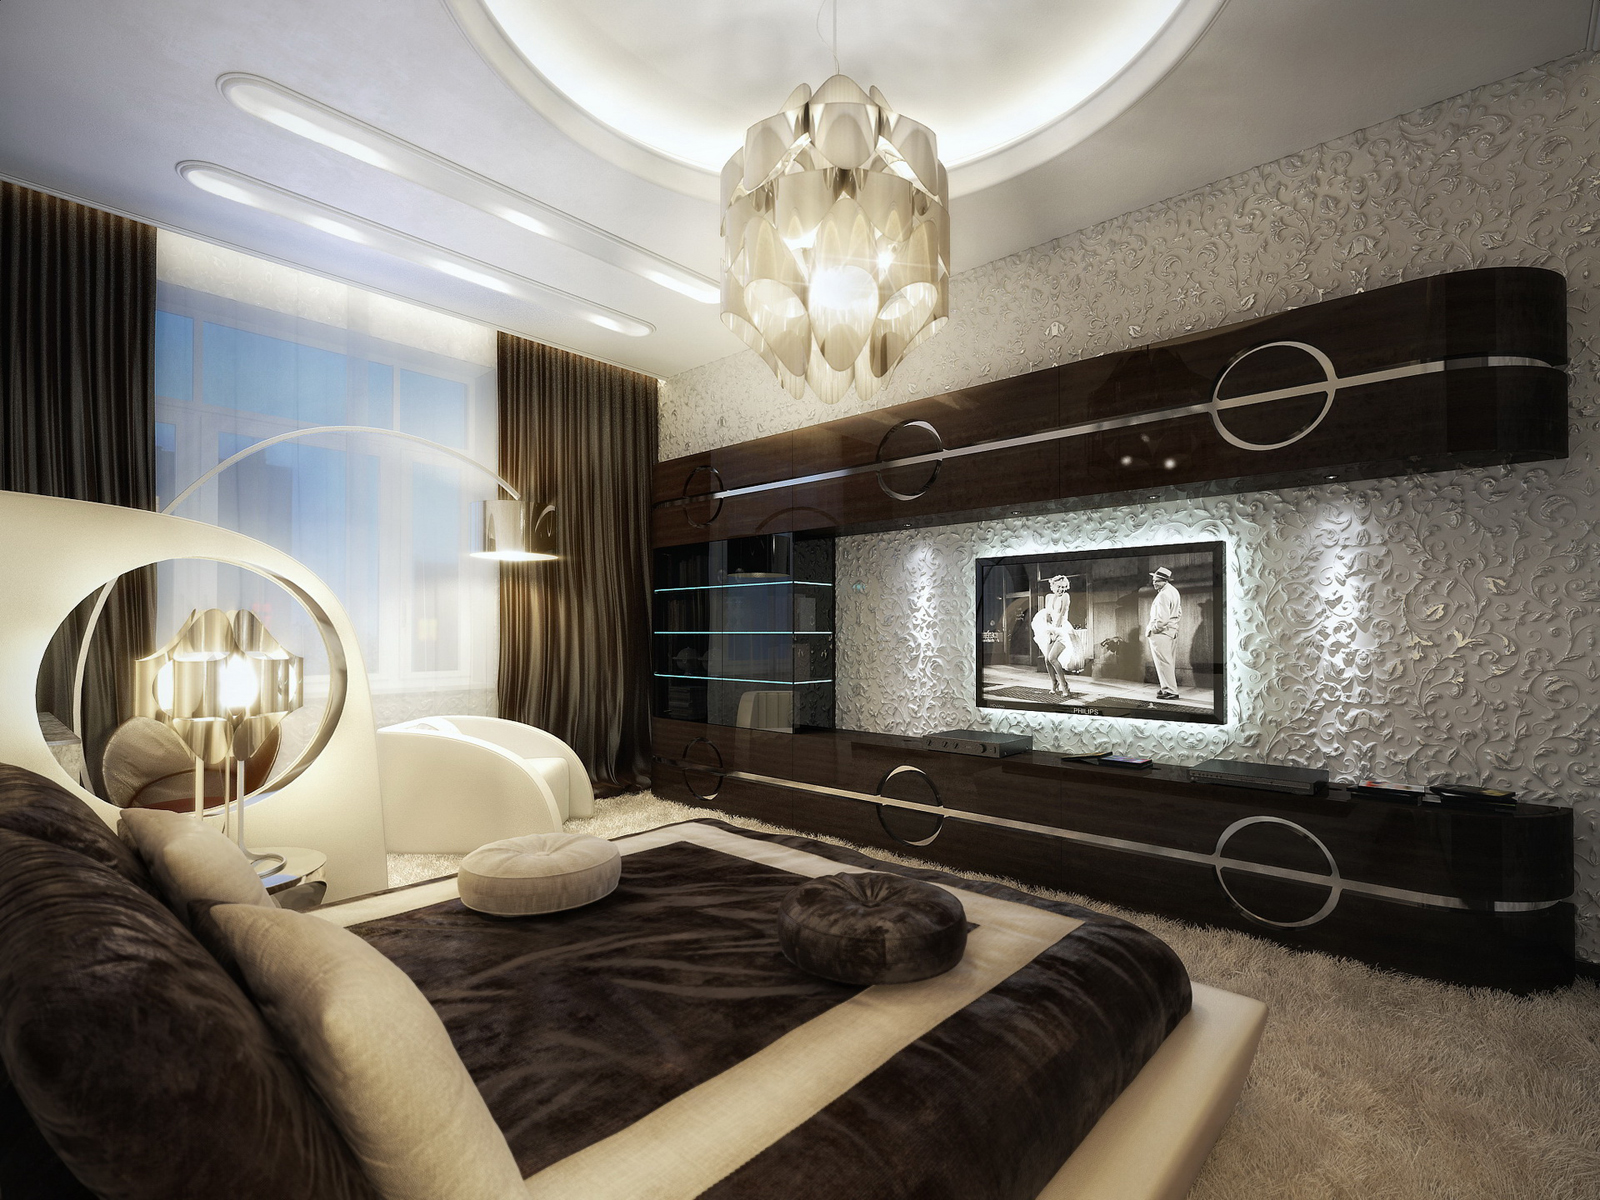 Luxury Interior Design | Home Decorating Ideas